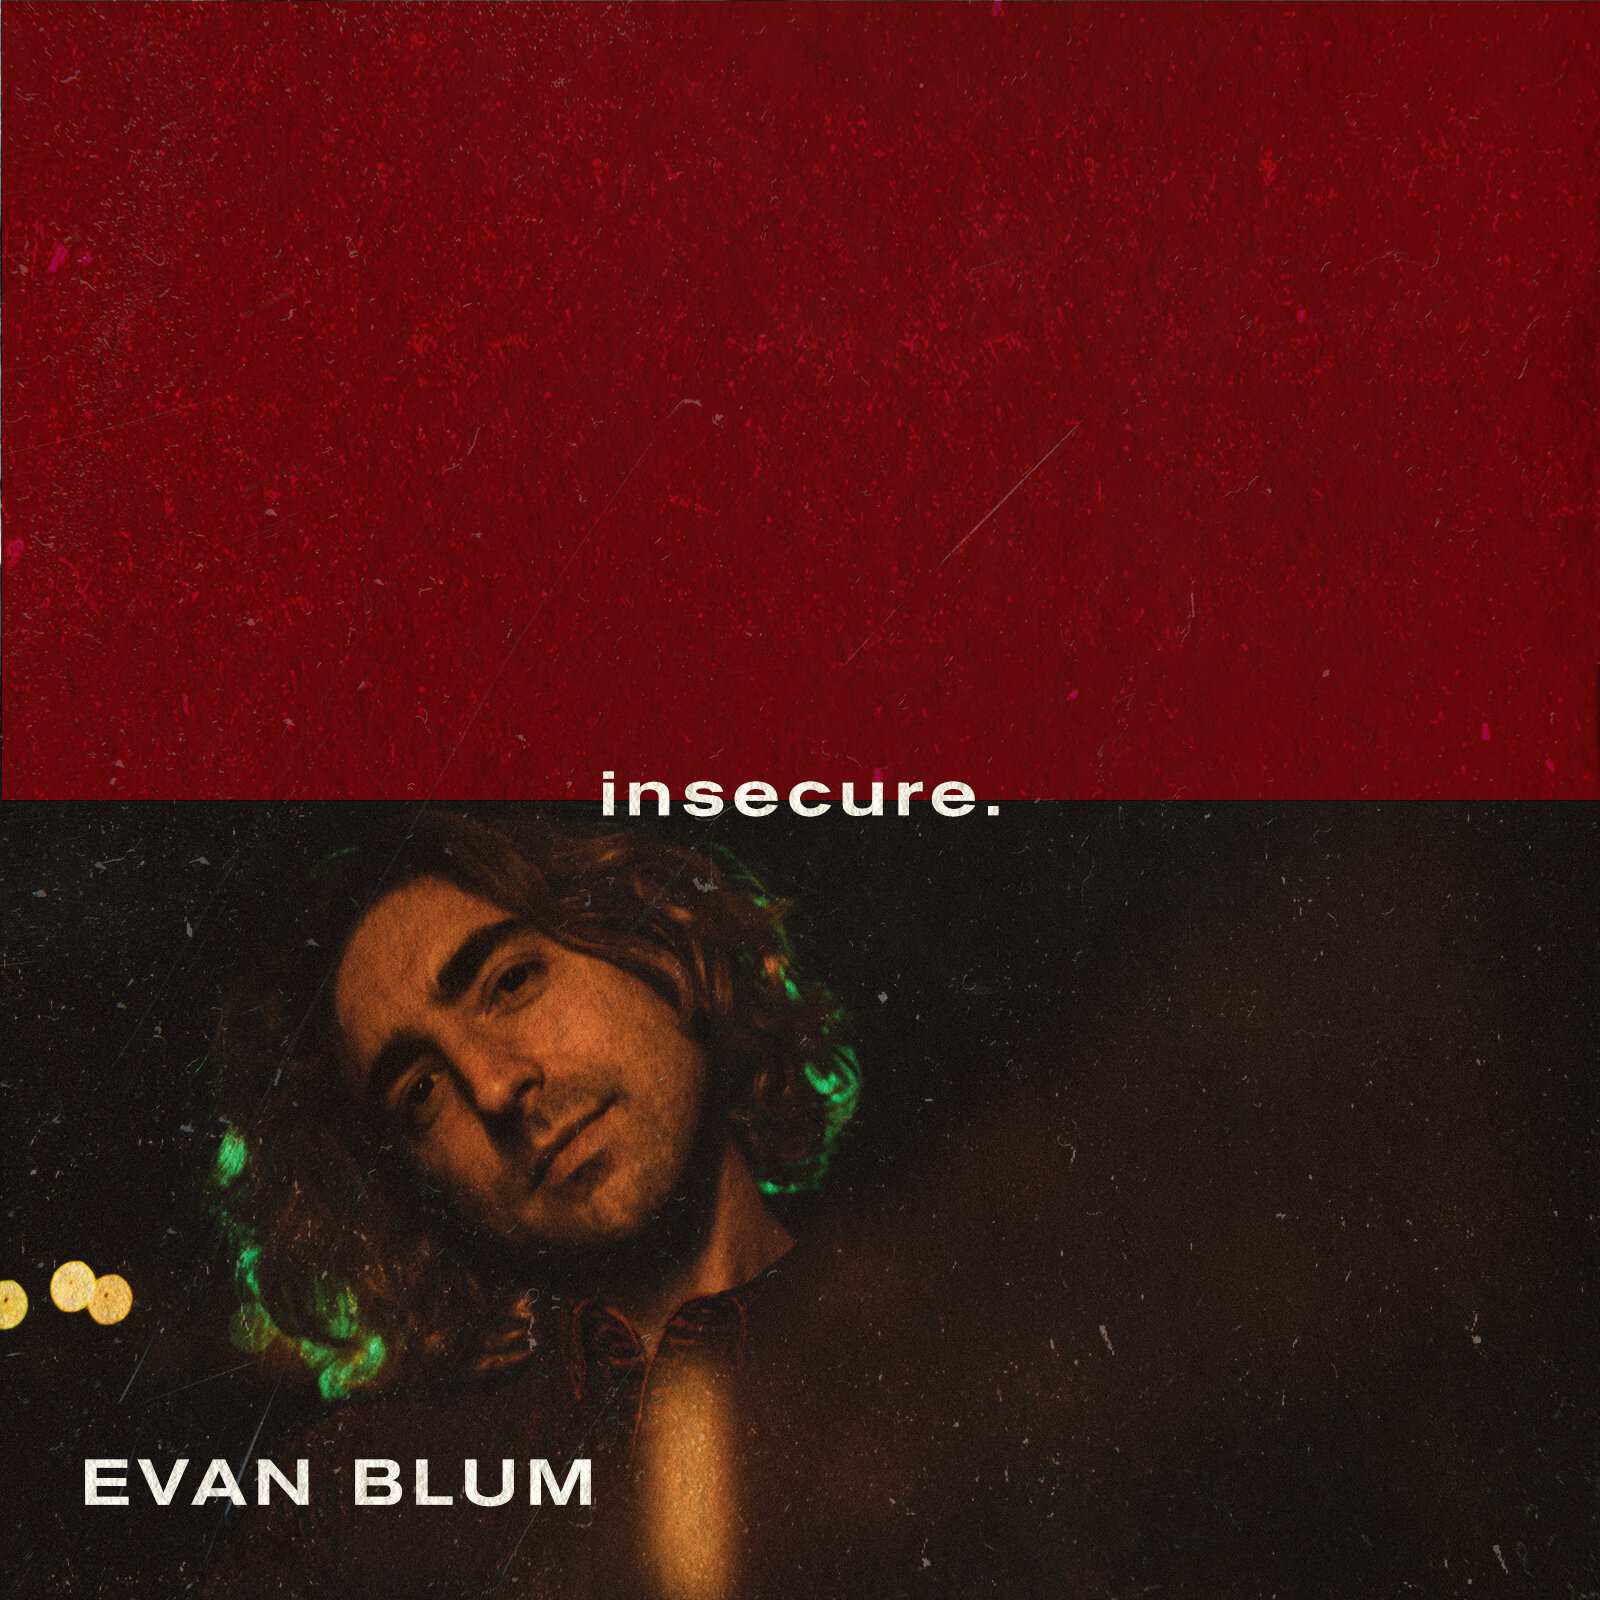 Evan Blum-Insecure Album Cover.JPG